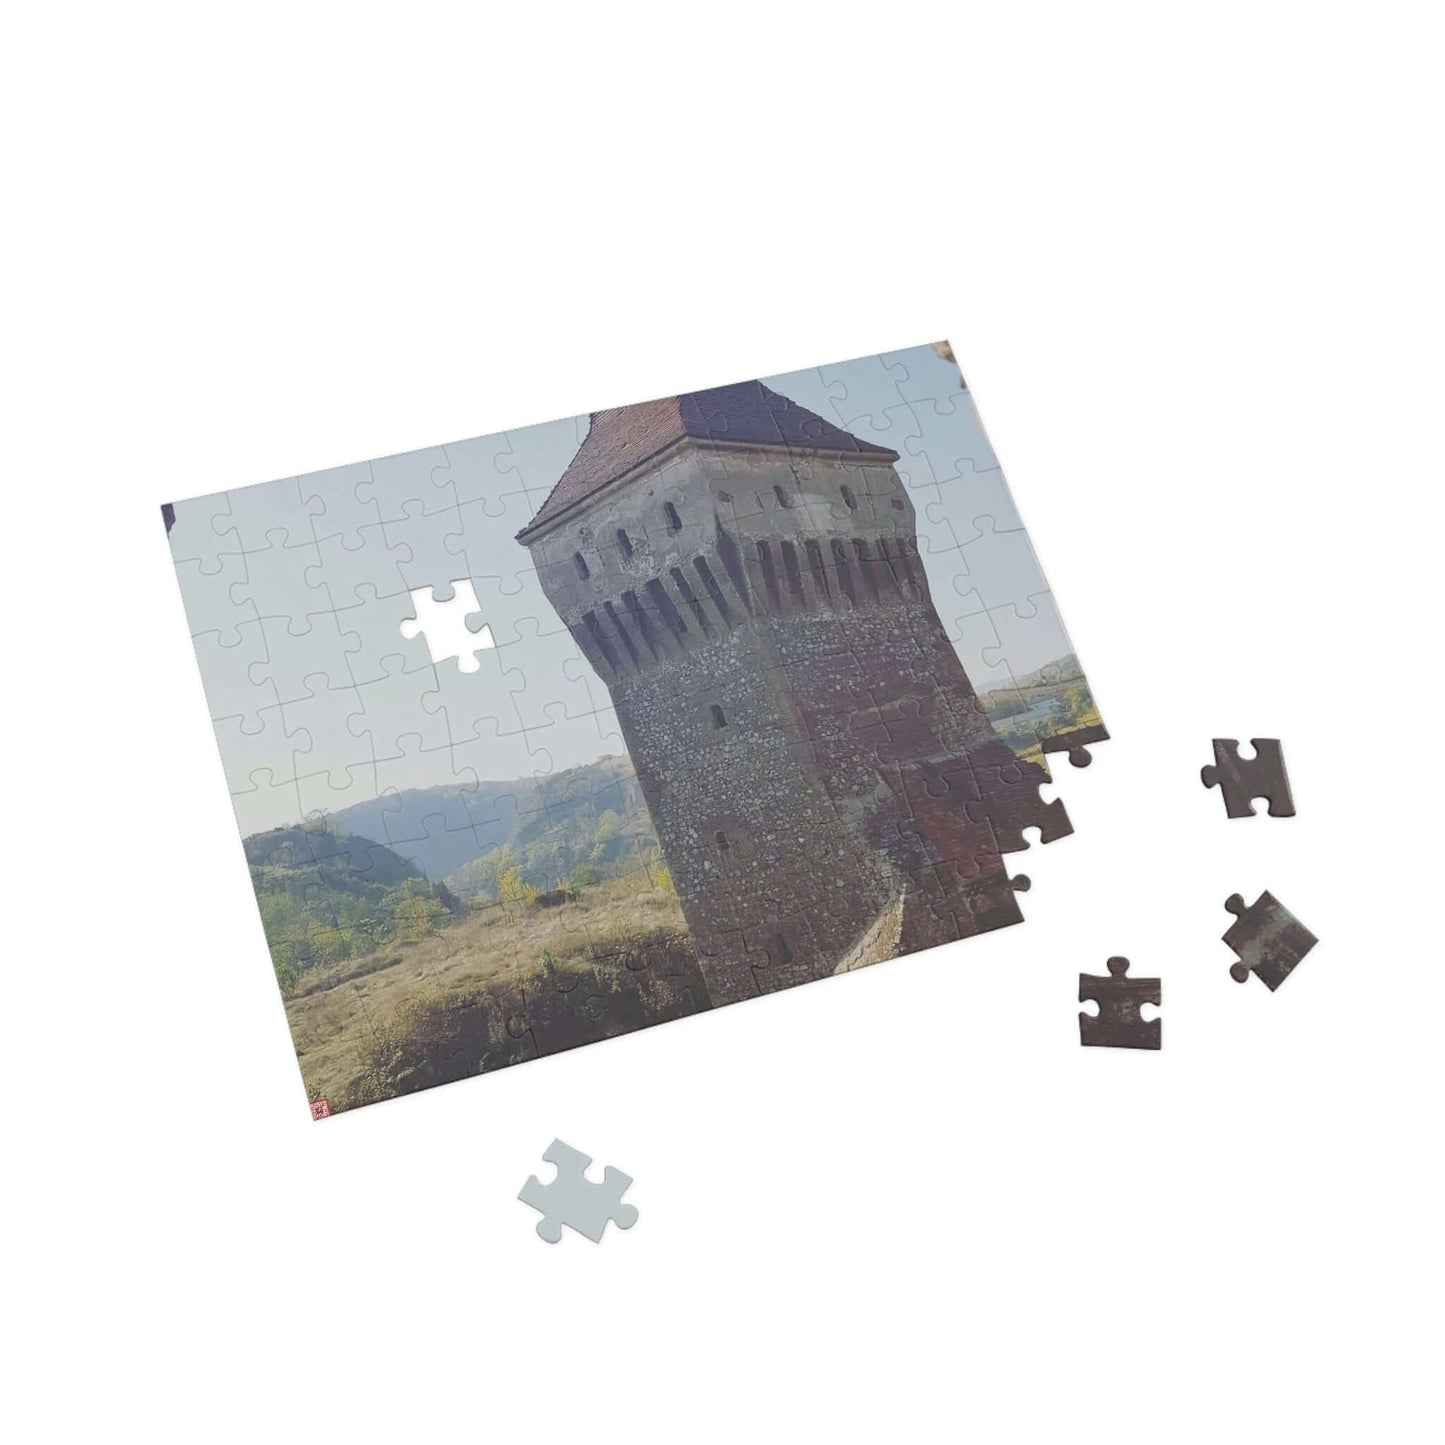 Hunedoara Castle Corvinilor | Romania | Puzzle (96, 252, 500, 1000-Piece)